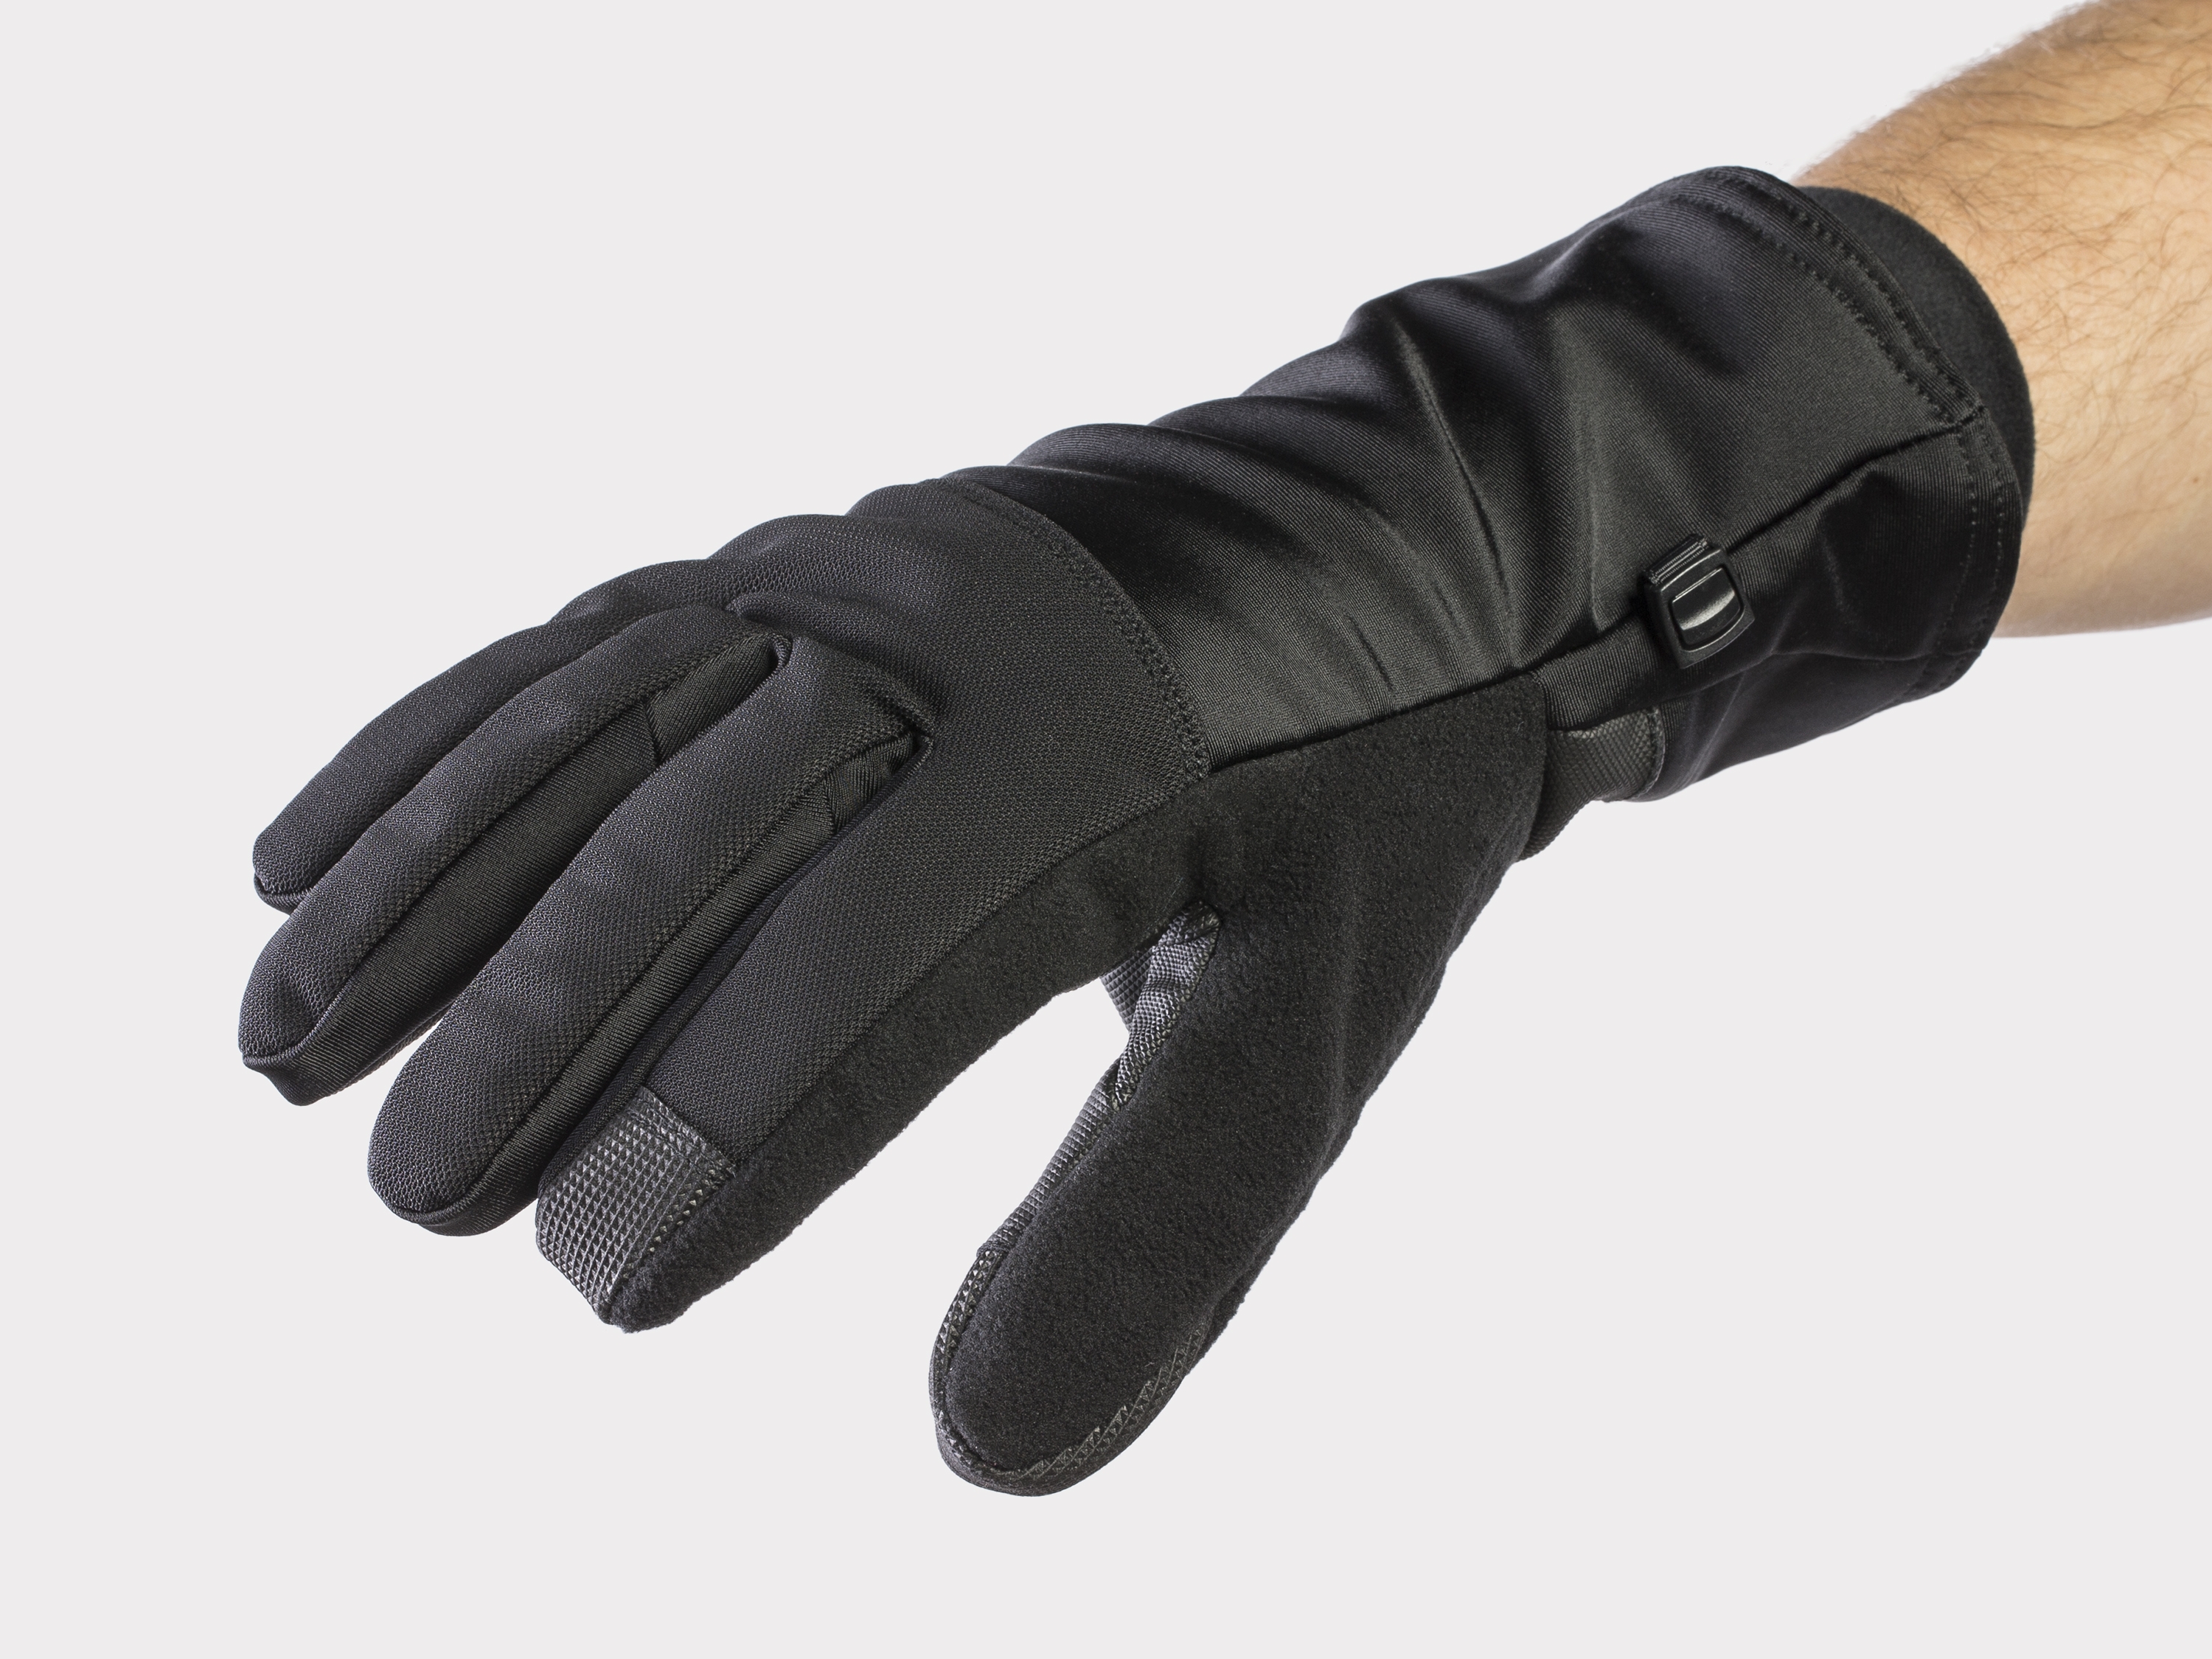 bontrager gloves amazon